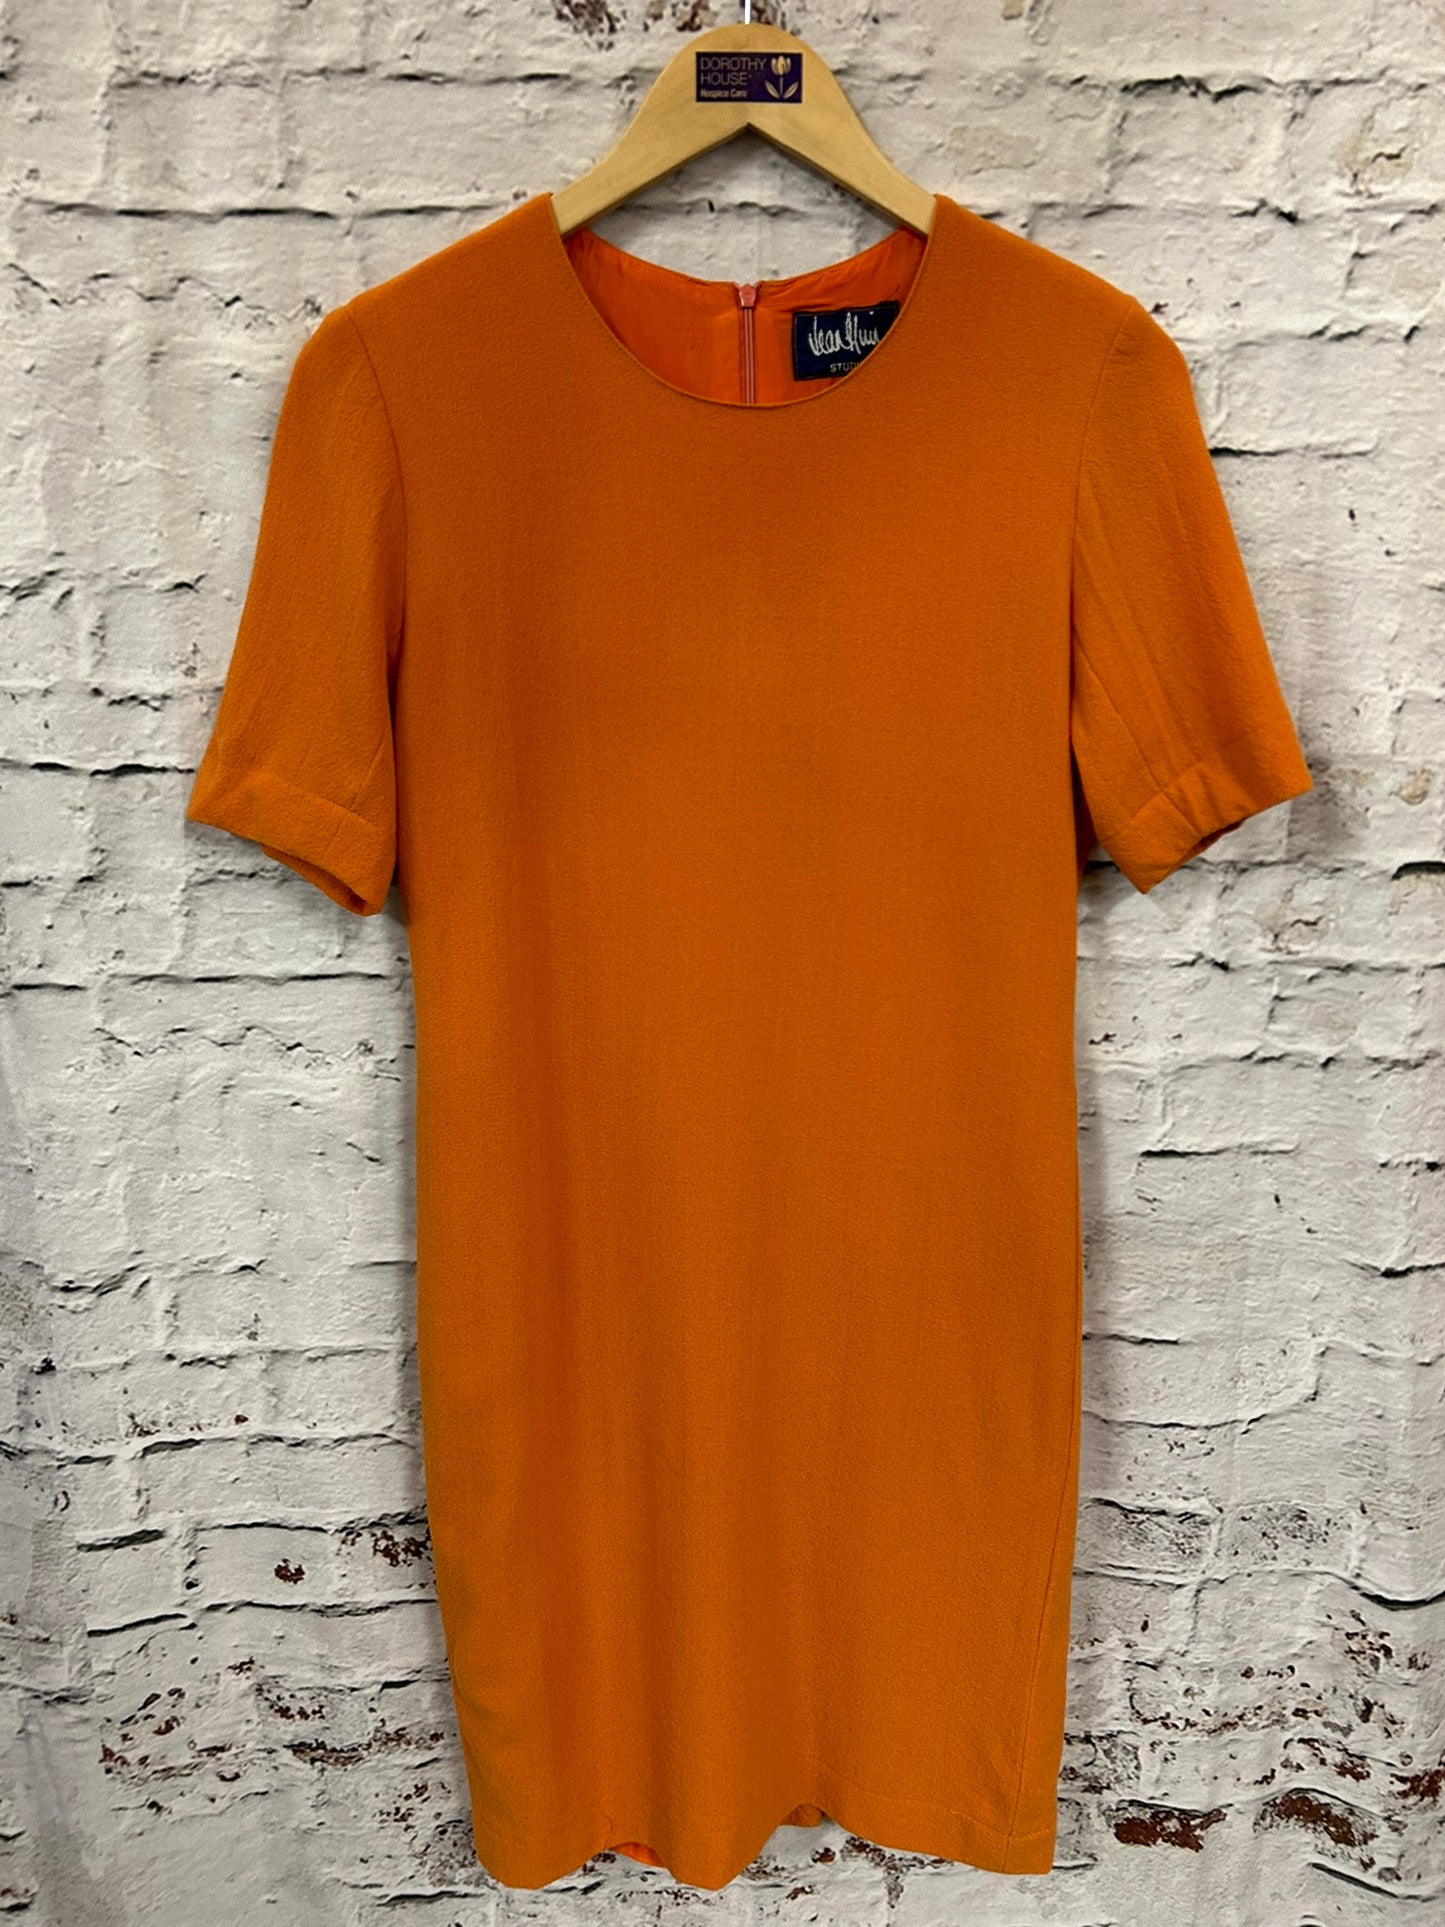 1960s Style Orange Shift Dress Size 8-10